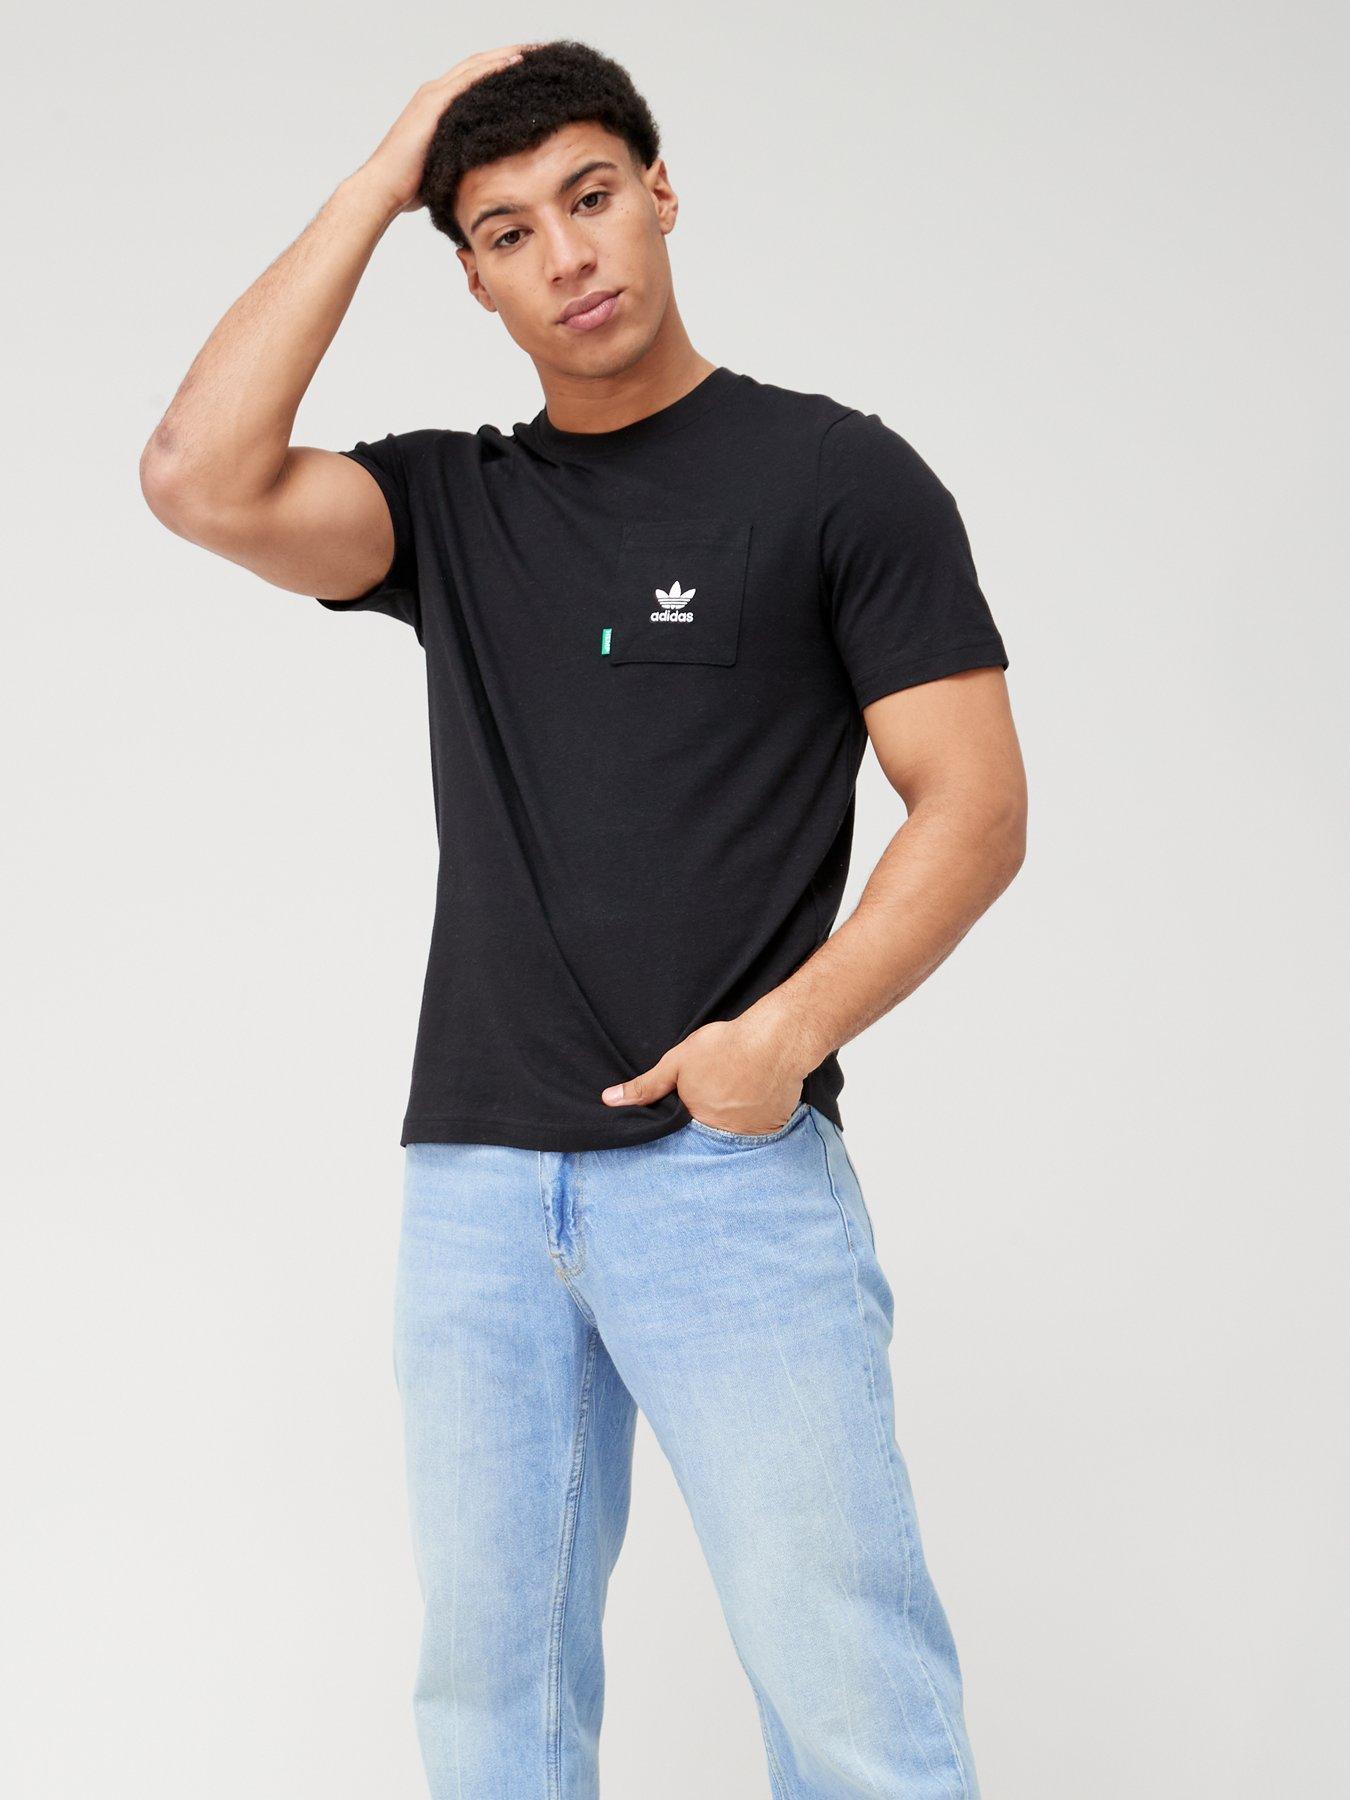 Made T-Shirt Essentials+ - adidas With Originals Black Hemp